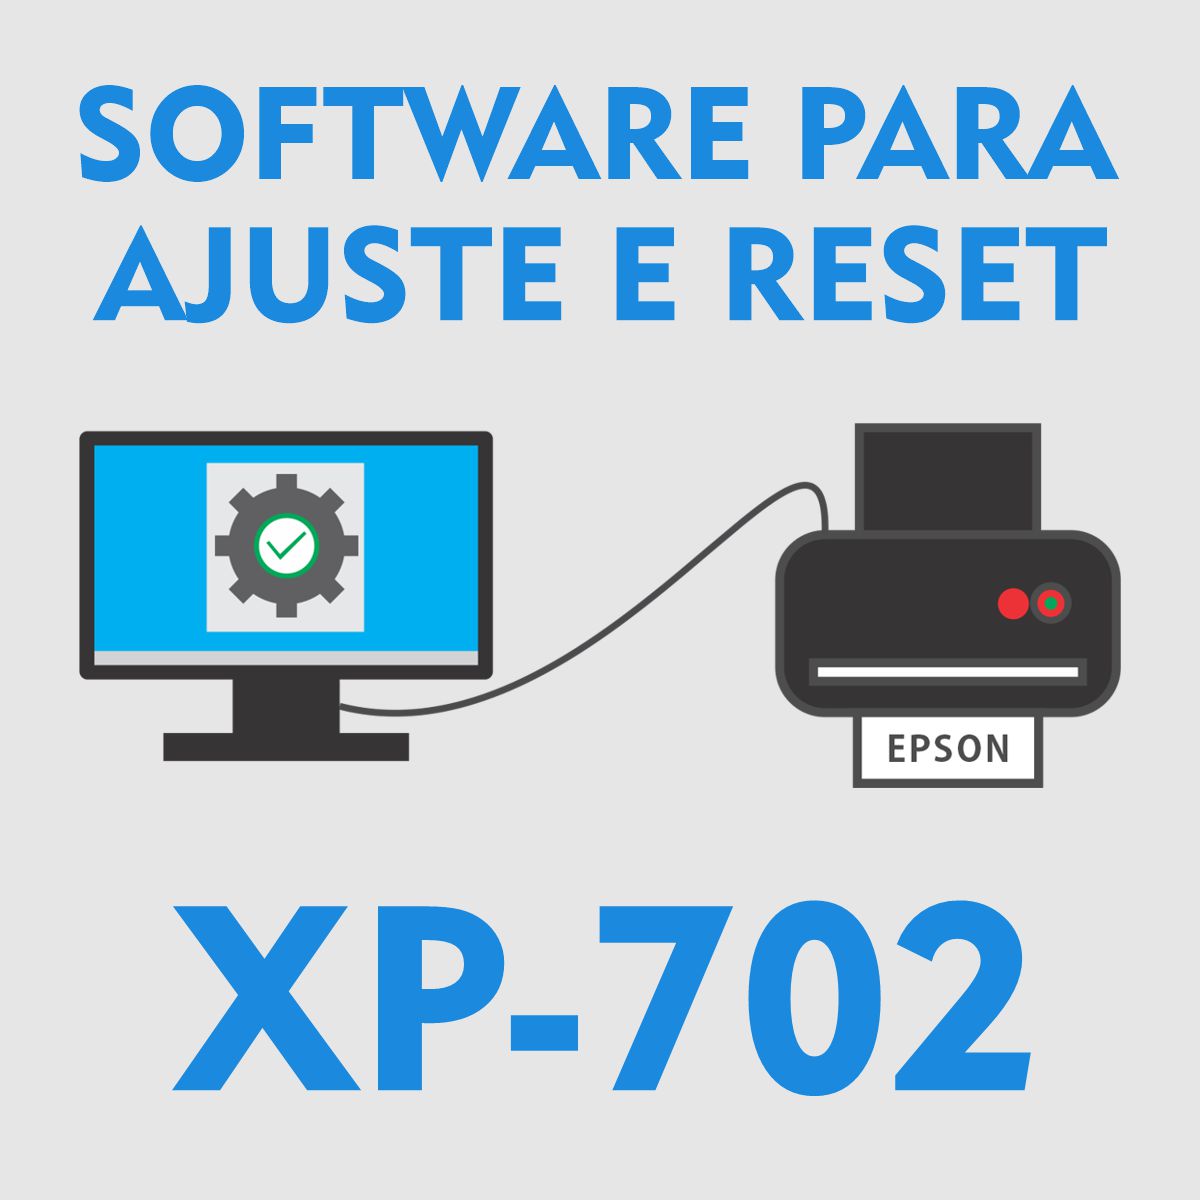 EPSON XP-702 | SOFTWARE PARA AJUSTES E RESET DAS ALMOFADAS